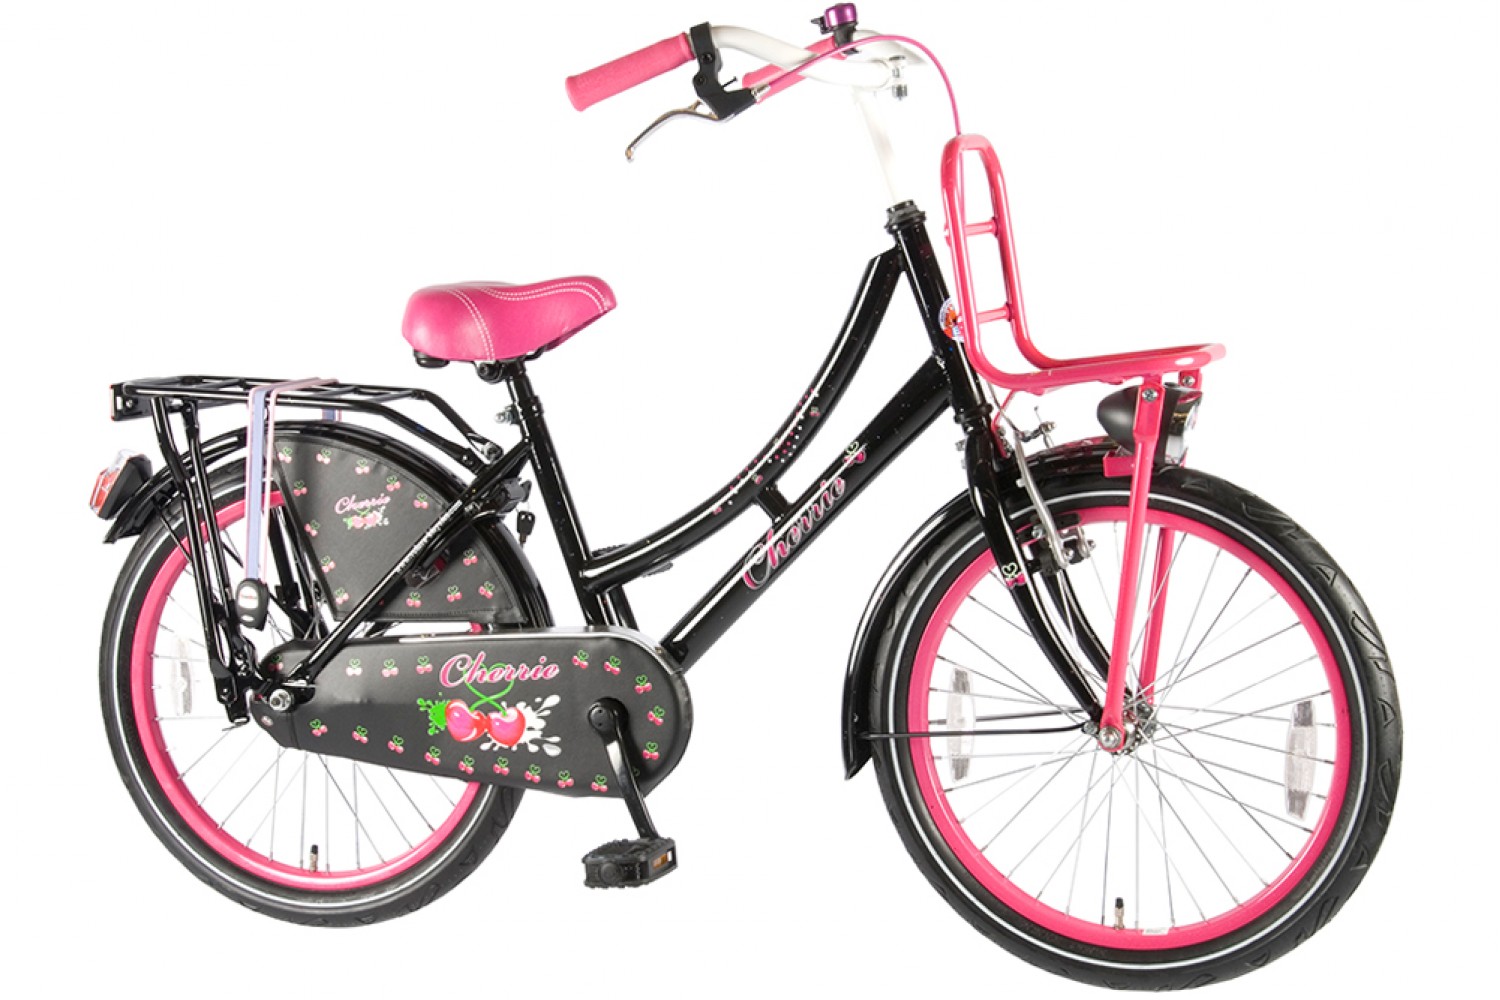 kristal Goed opgeleid Tirannie Volare Oma Cherry Zwart-Roze 20 inch - Meisjesfiets | City-Bikes.nl